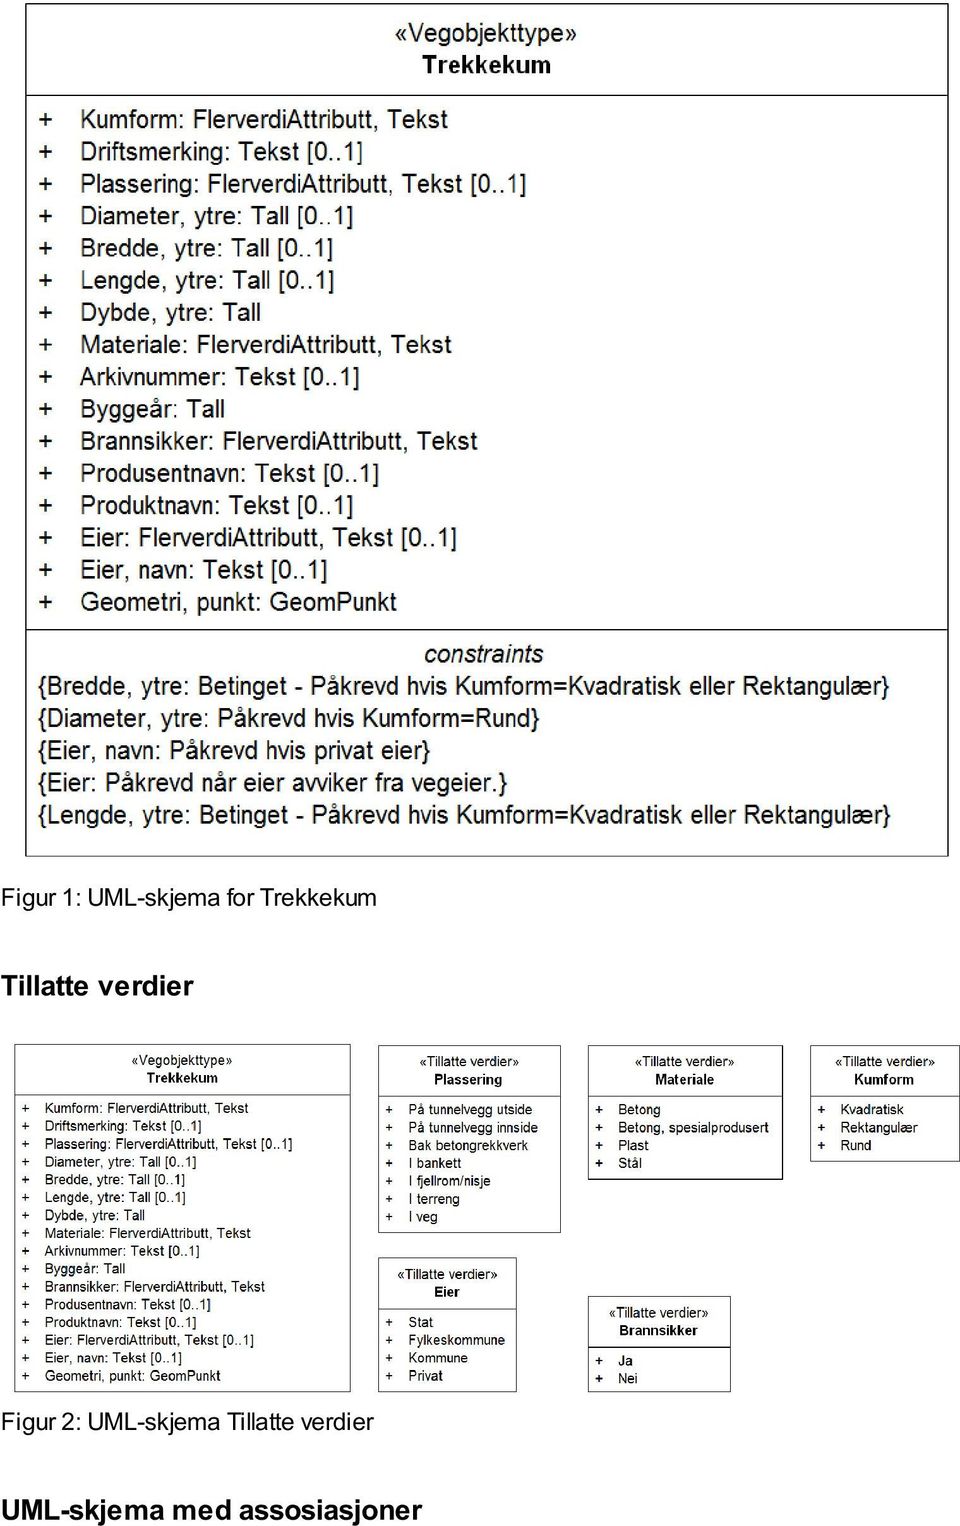 Figur 2: UML-skjema Tillatte